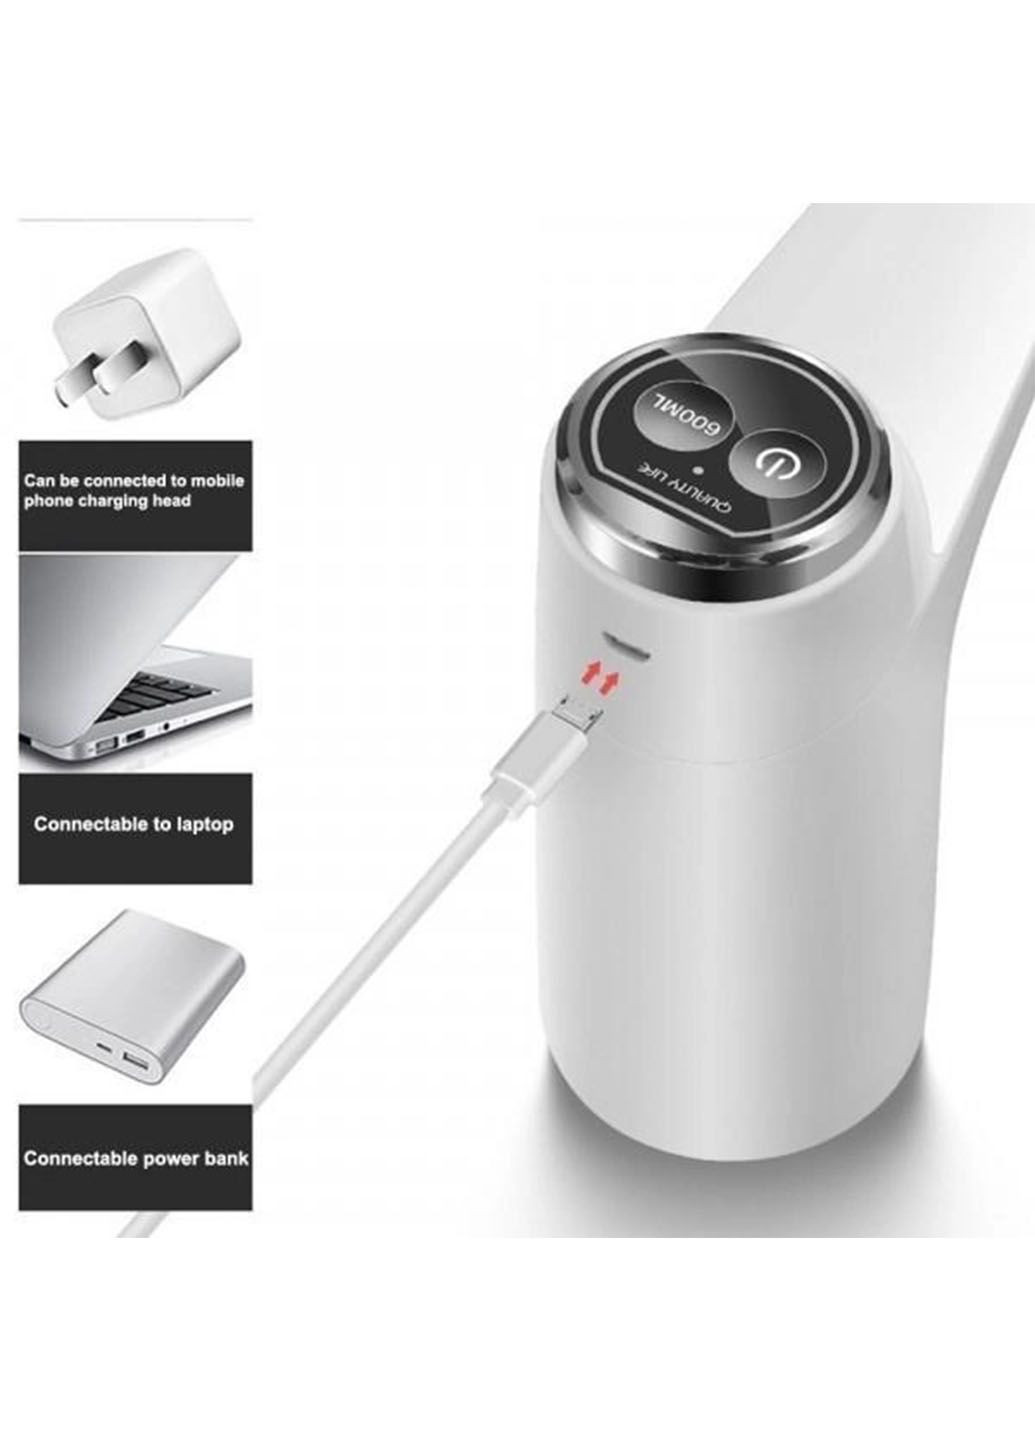 Электрический сенсорный насос для воды Aqua Pump Elite на аккумуляторе 2 режима набора воды Idea mag-623 (290049459)